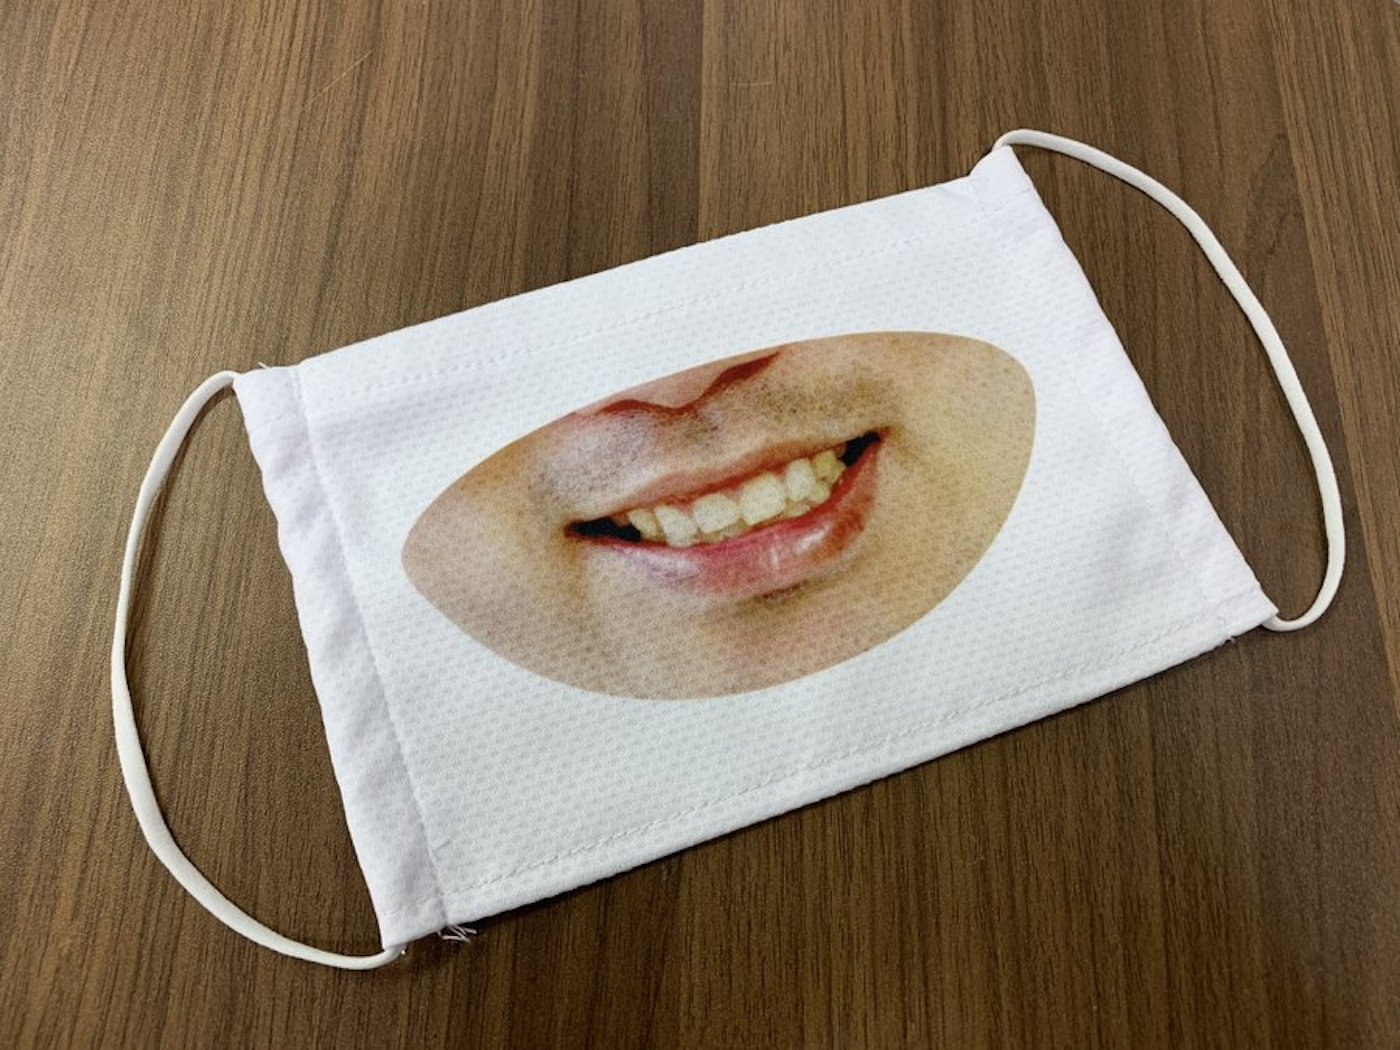 Au Japon, les employés de ce magasin portent un "masque sourire" pour être plus sympathique